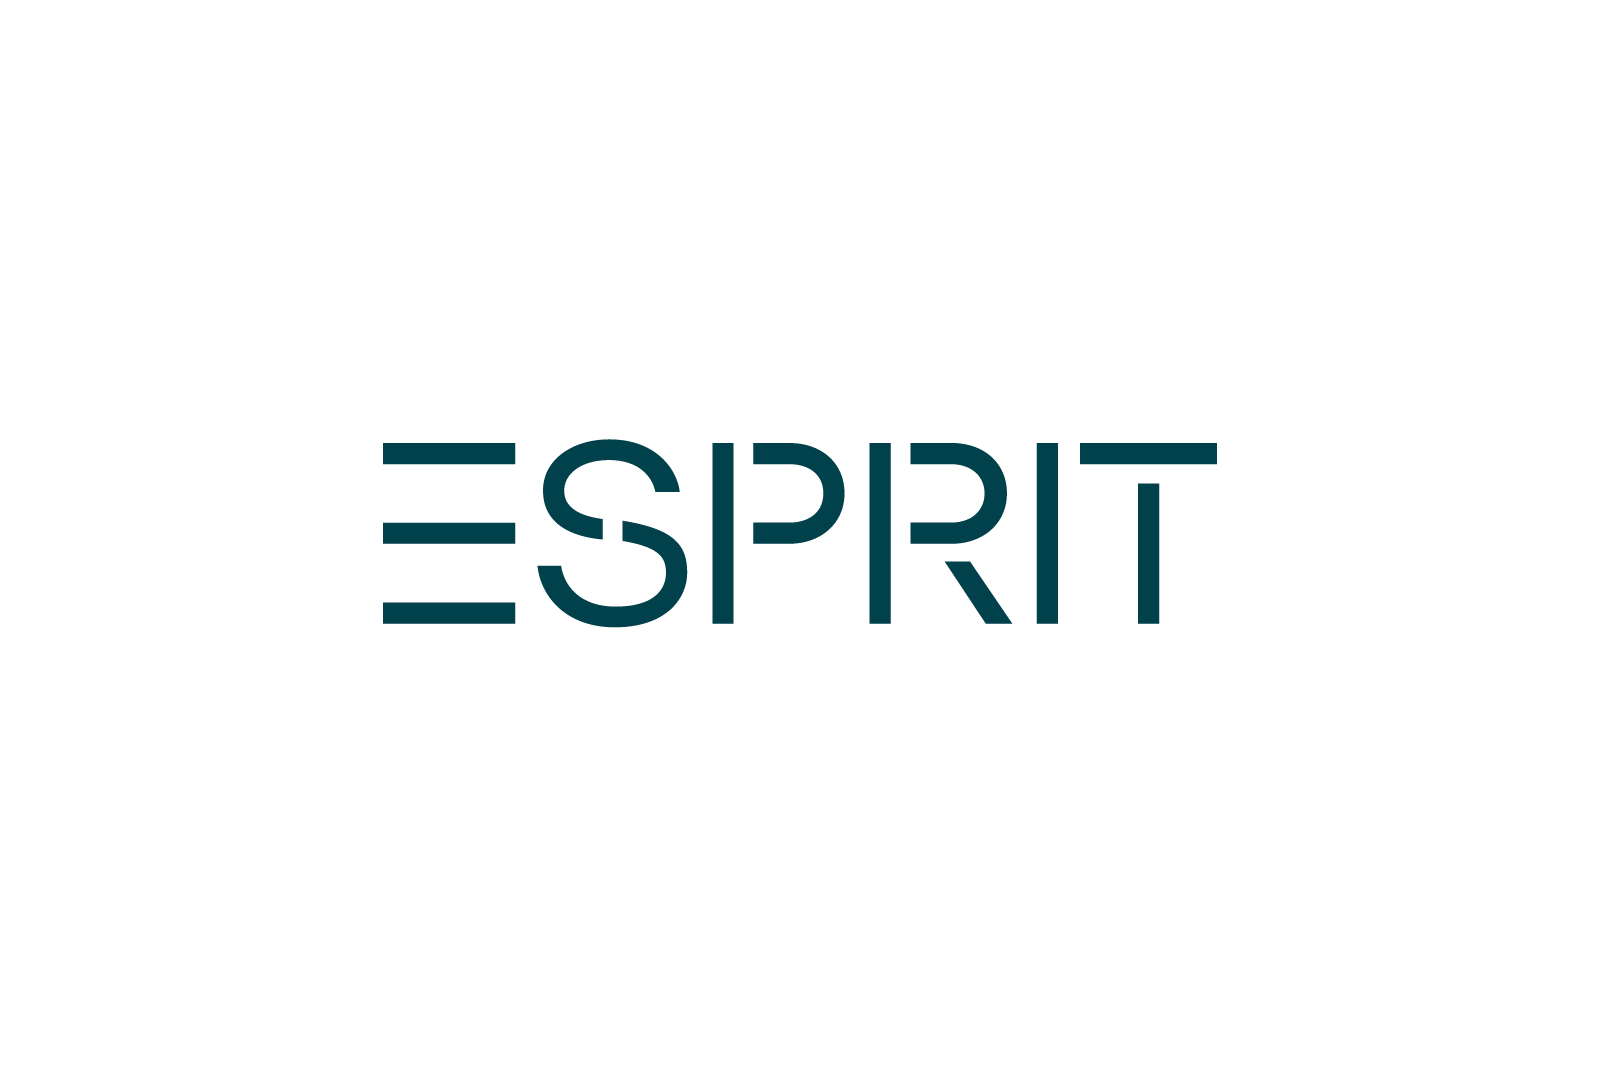  Esprit Logo 